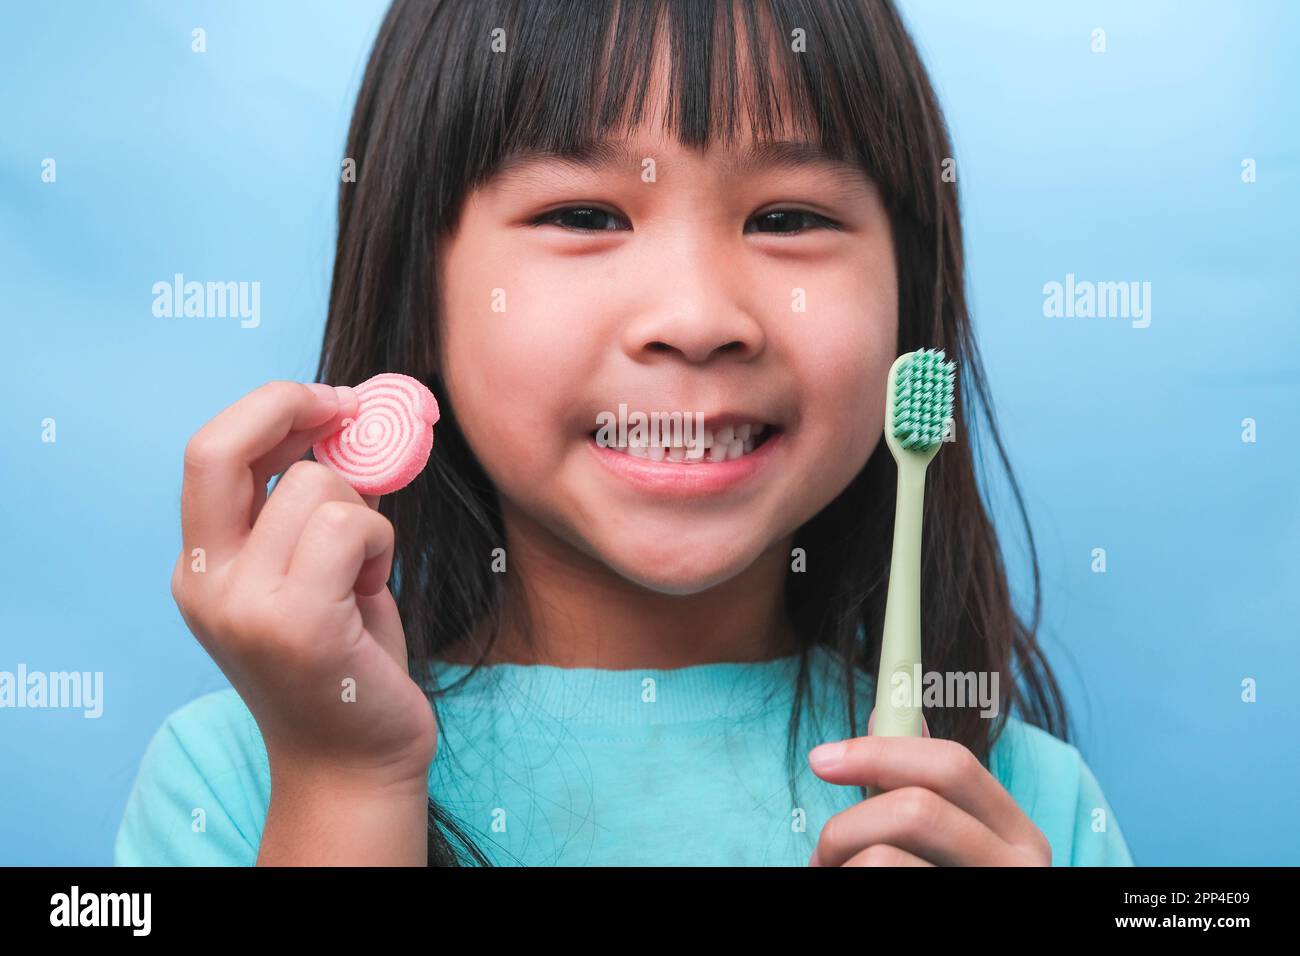 Lächelndes, süßes kleines Mädchen mit Zahnbürste und Süßigkeiten auf blauem Hintergrund. Kinder trainieren Mundhygiene und ungesunde essen. Zahnverfallsprophylaxe Stockfoto